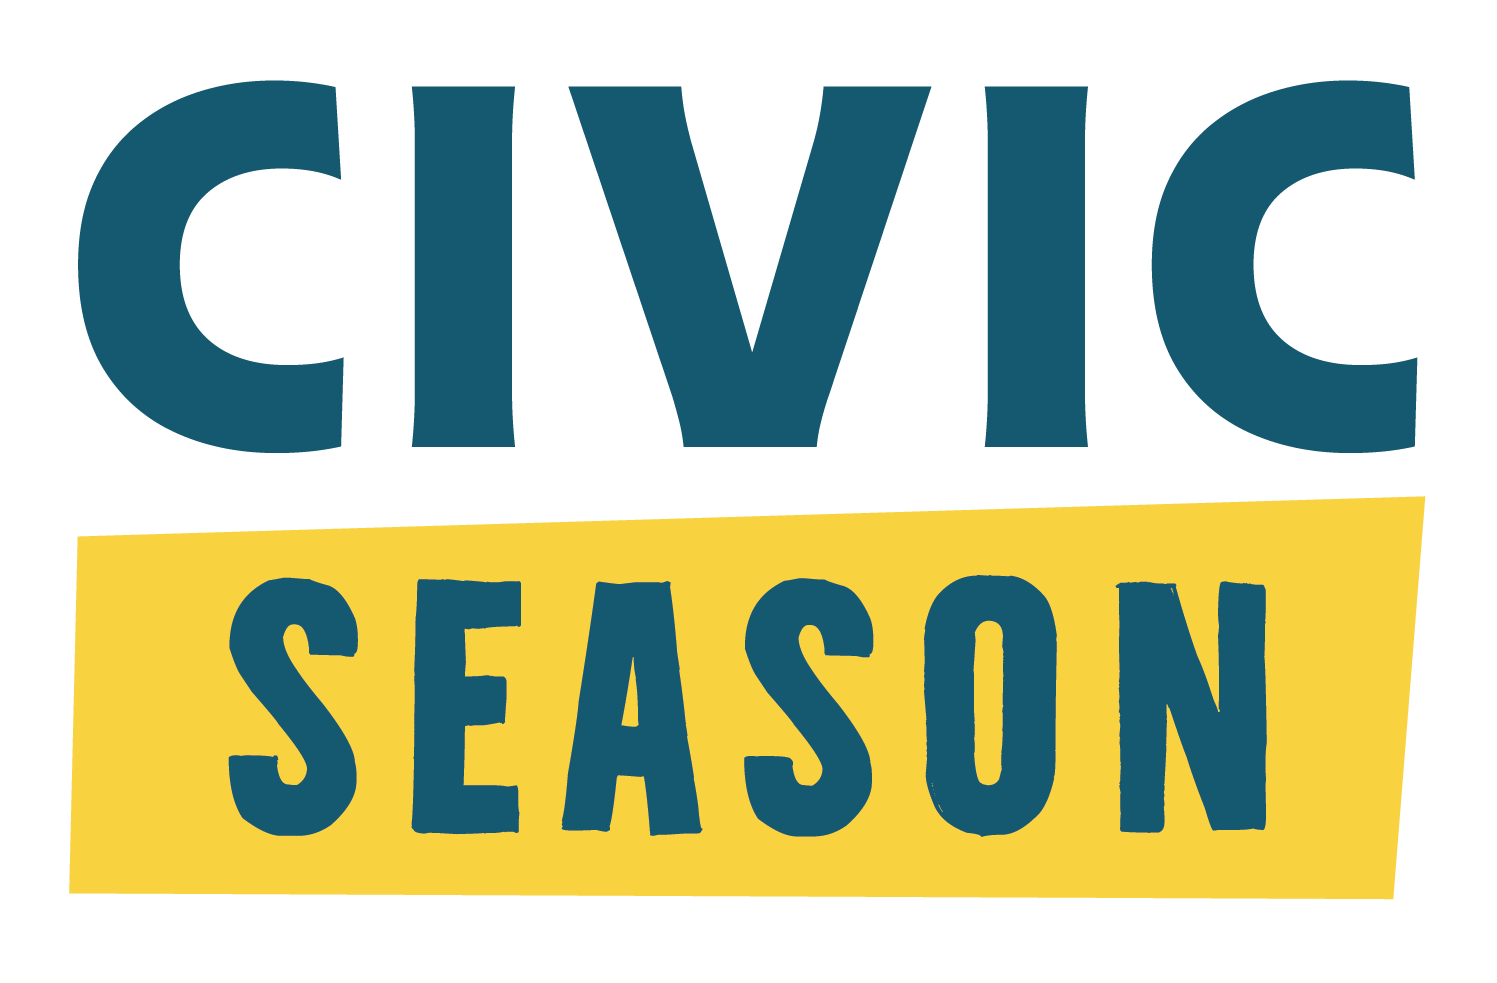 Civic Season logo